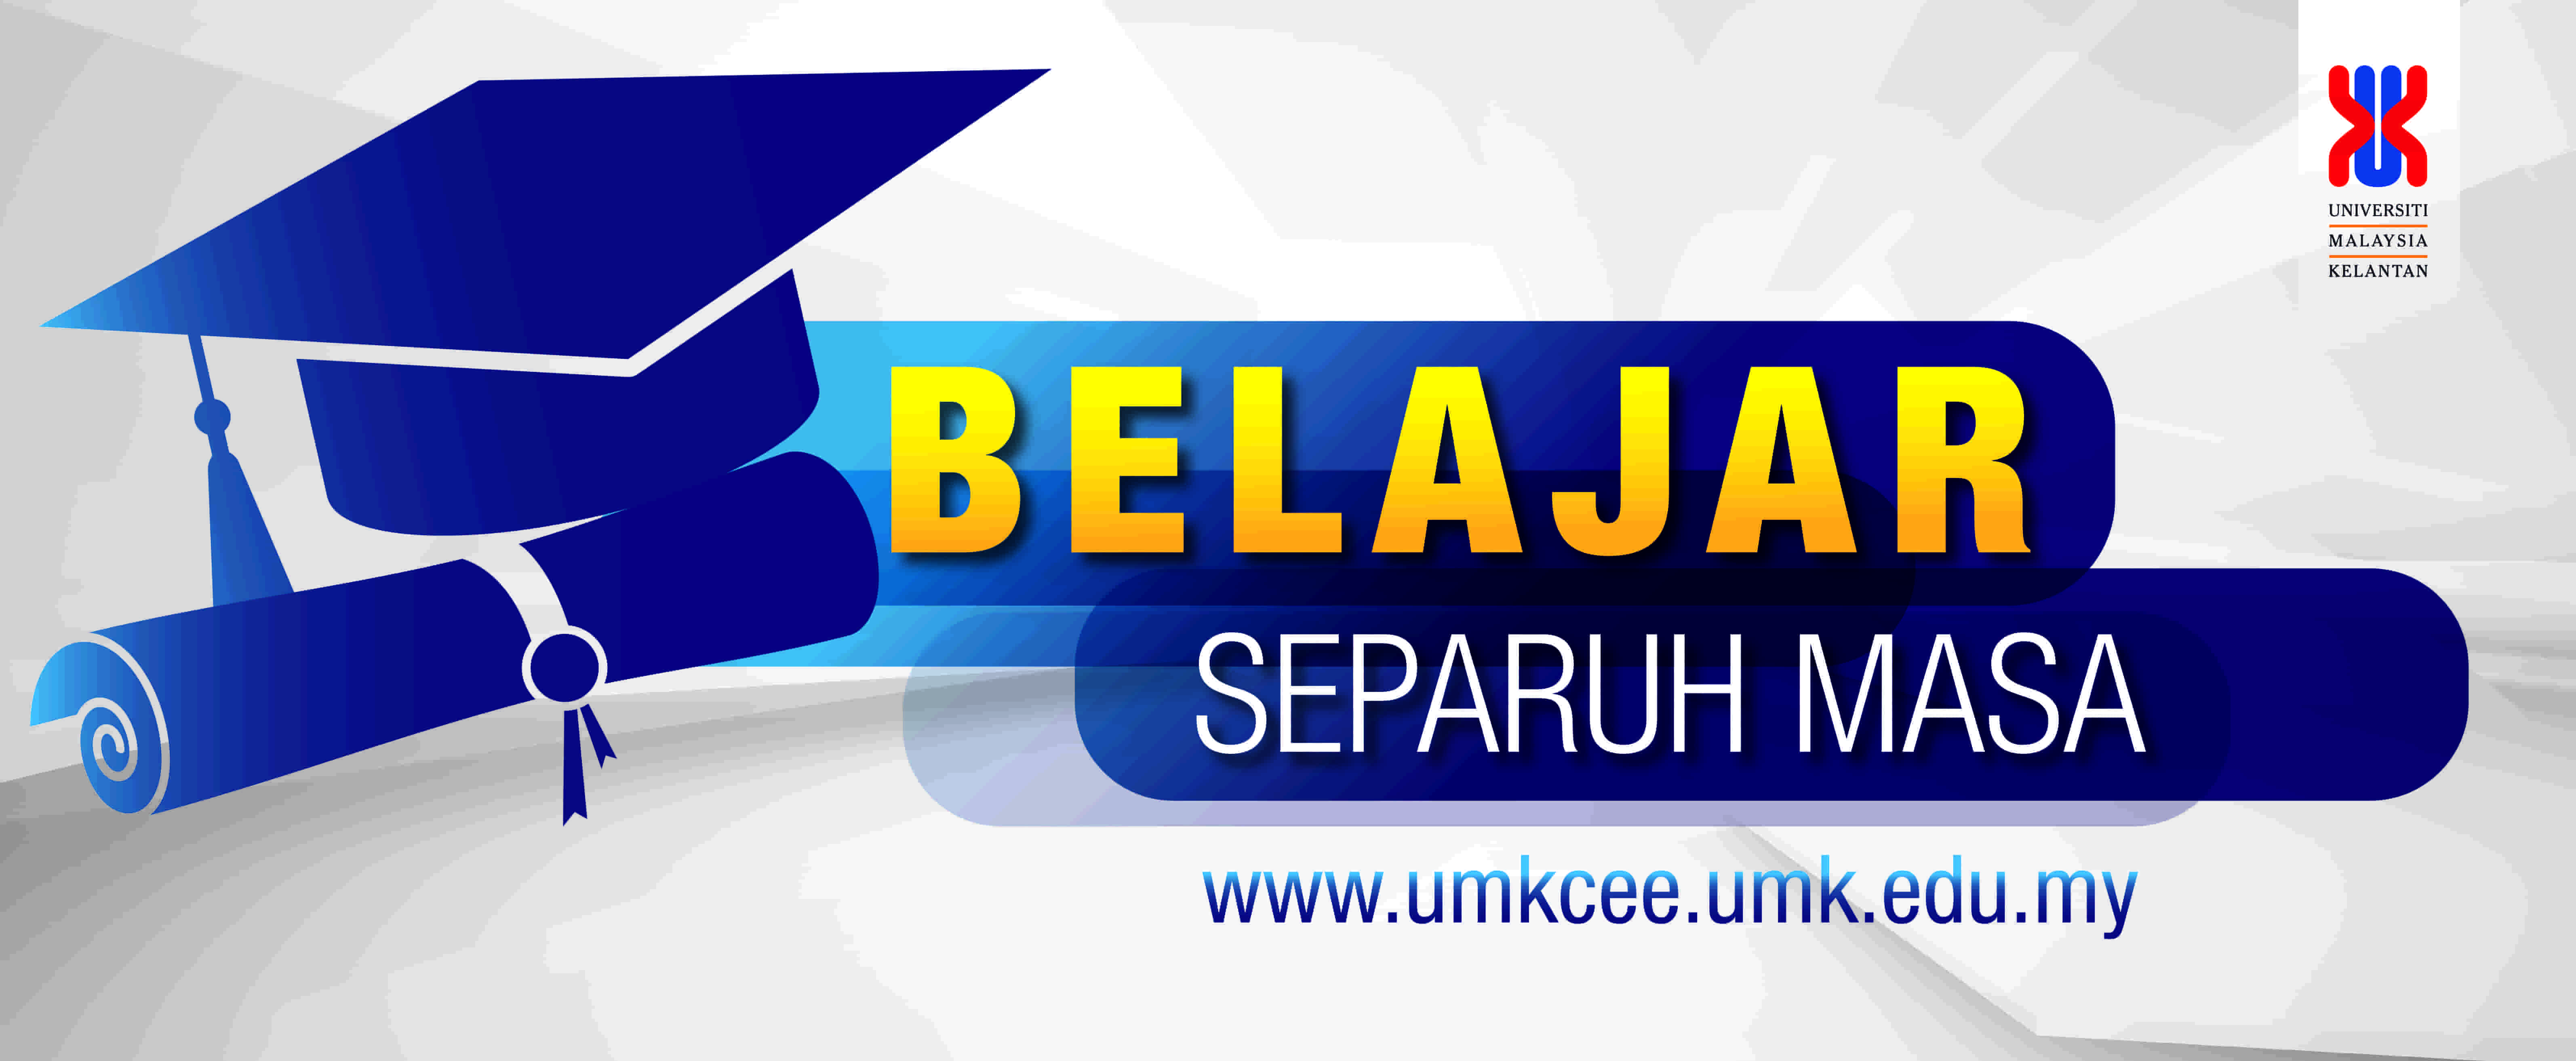 UMK CENTER FOR EXTERNAL EDUCATION - UNIVERSITI MALAYSIA KELANTAN